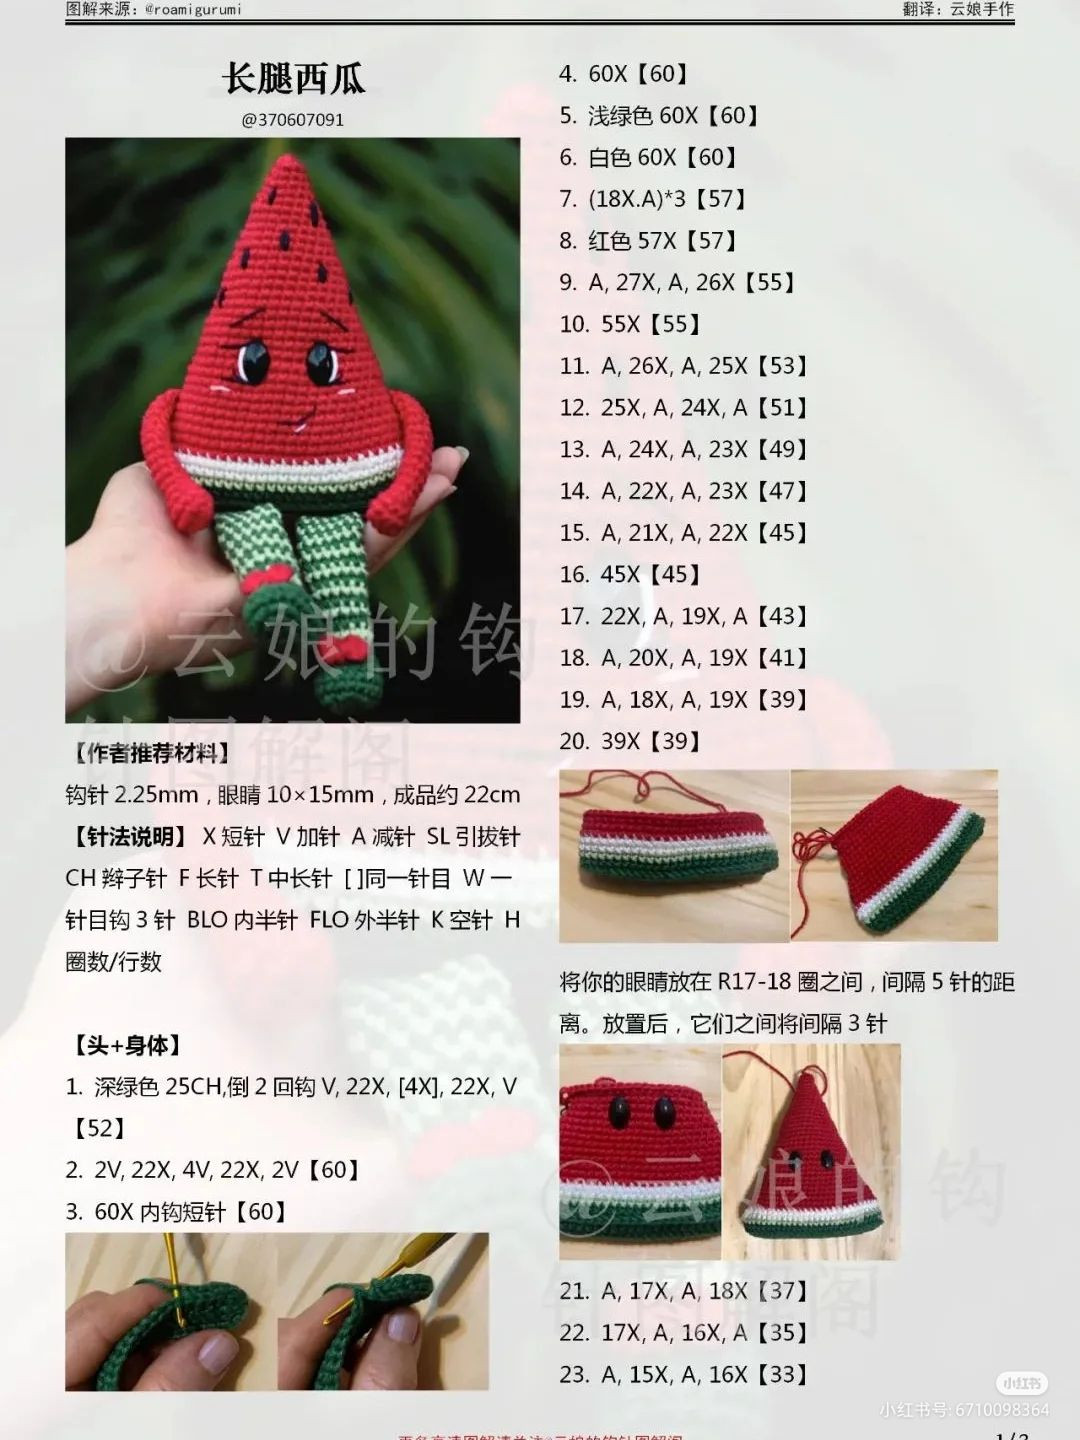 long-legged watermelon crochet pattern